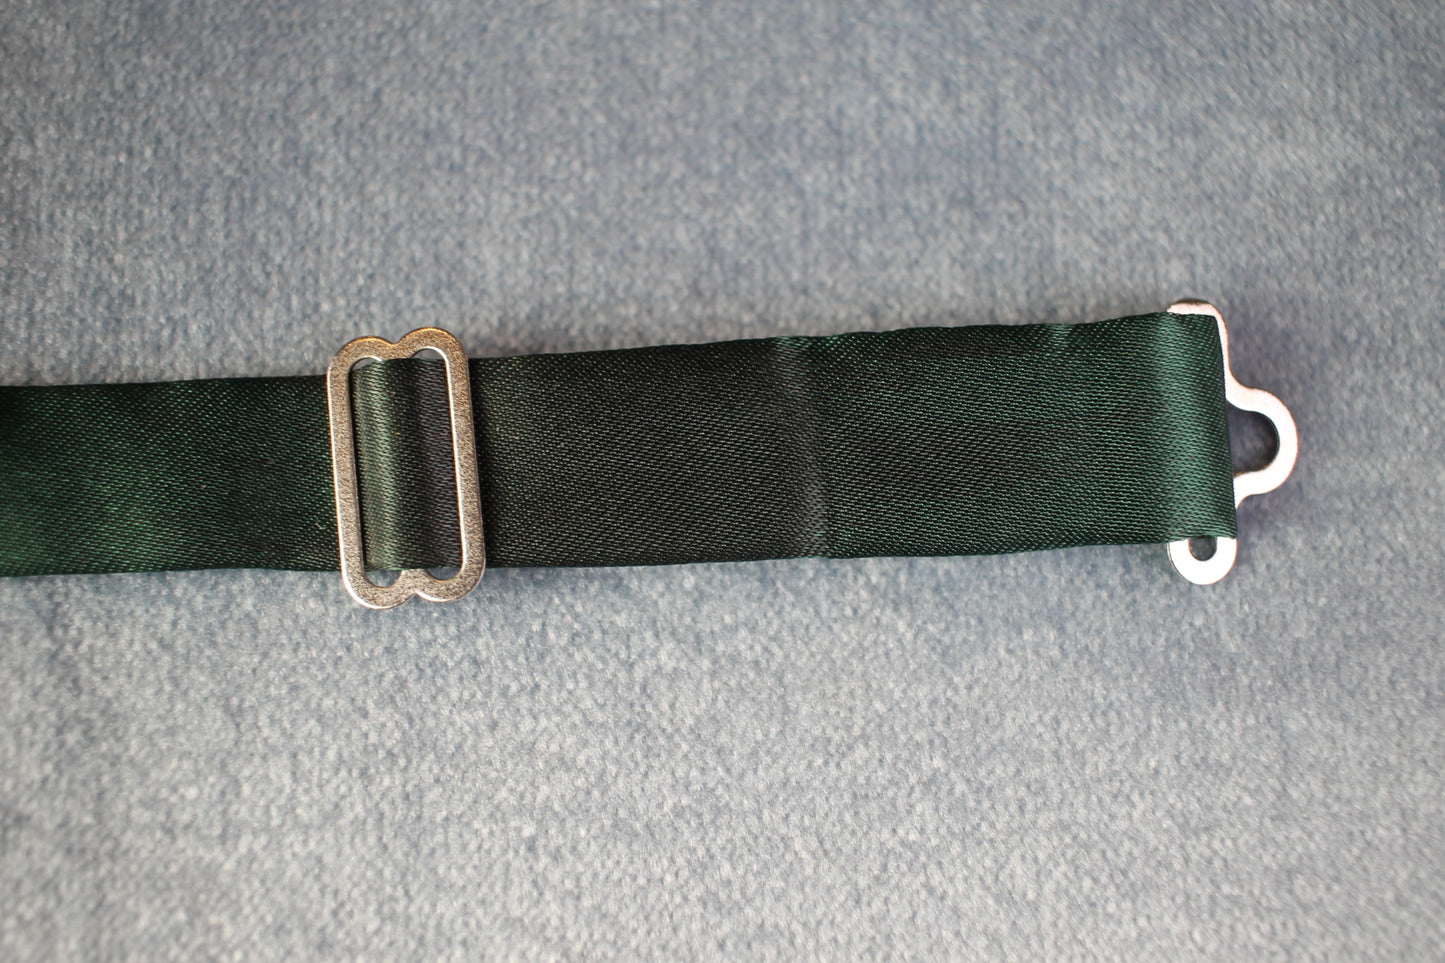 Vintage pre-tied dark green satin bow tie adjustable